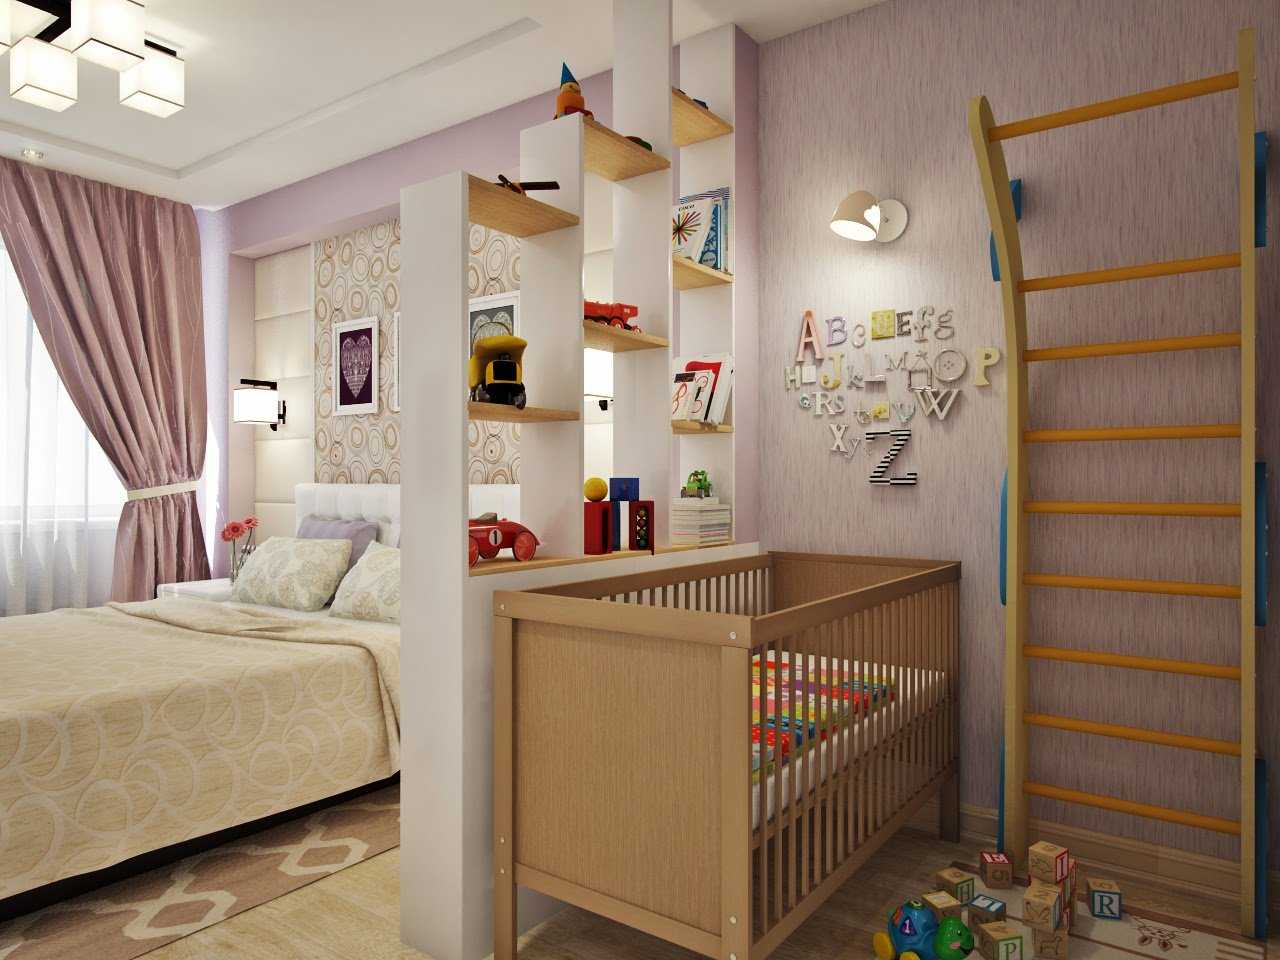 Гостиная и детская в одной комнате: 55 фото, идеи зонирования